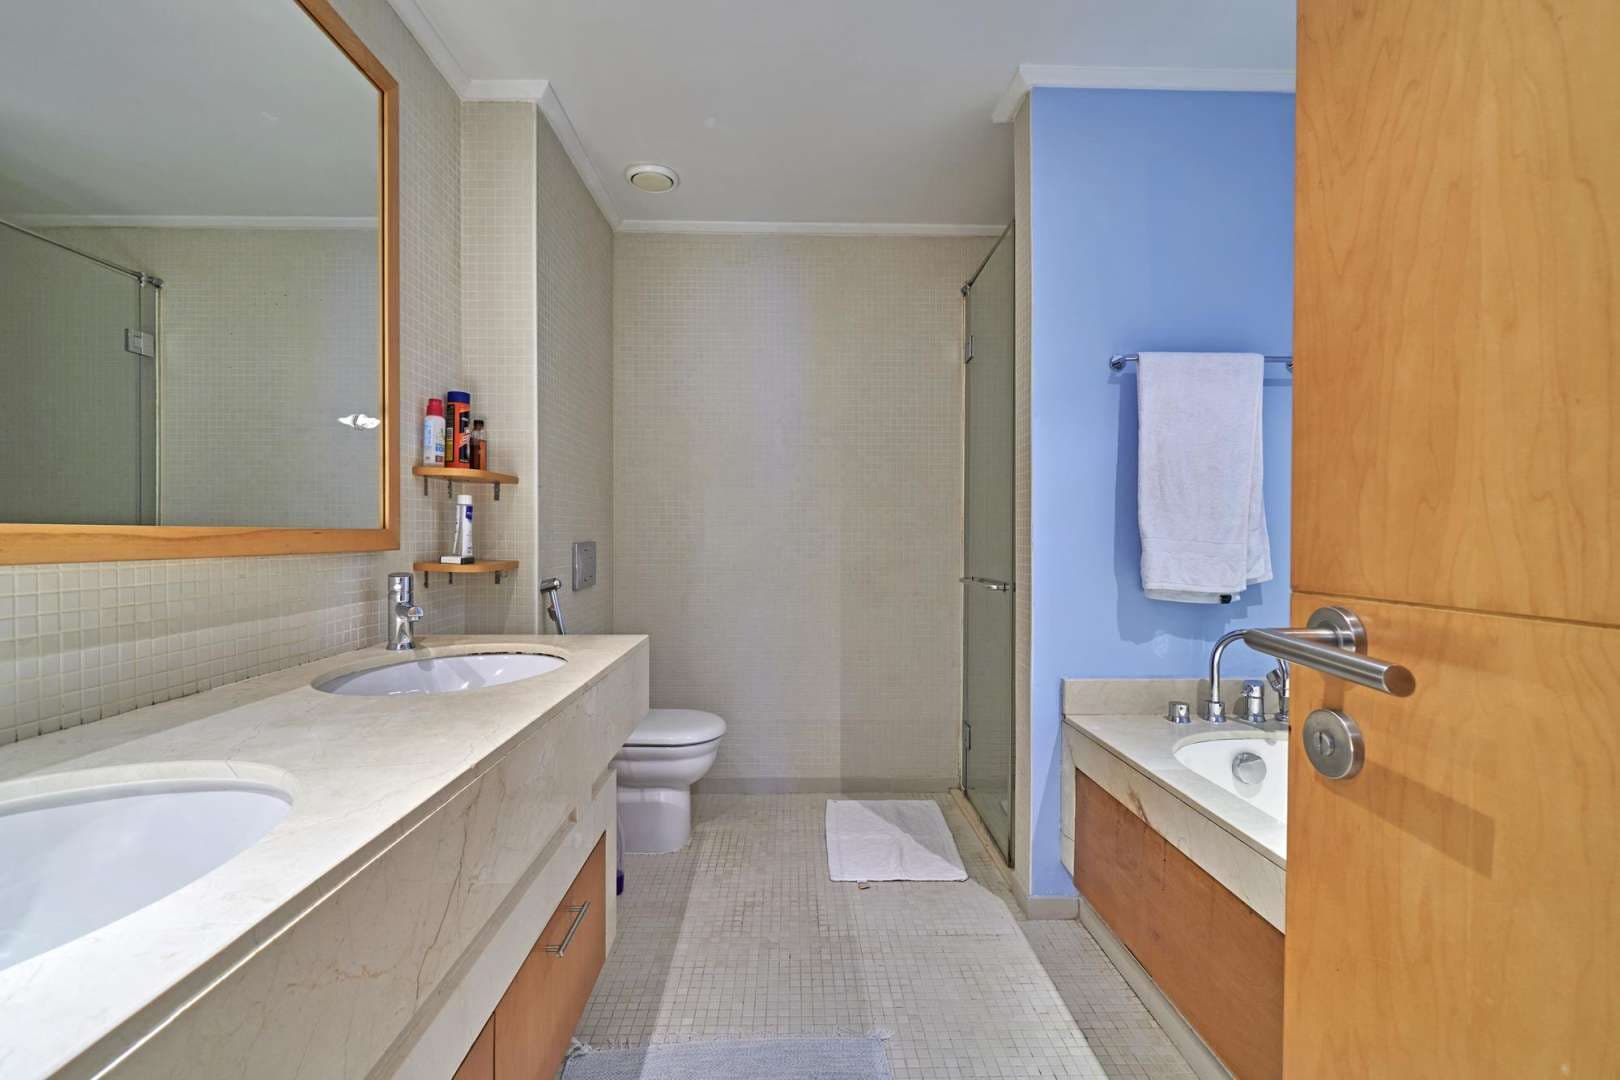 2 Bedroom Apartment For Rent Marina Promenade Lp05797 1f8b7e85c8cefd00.jpg